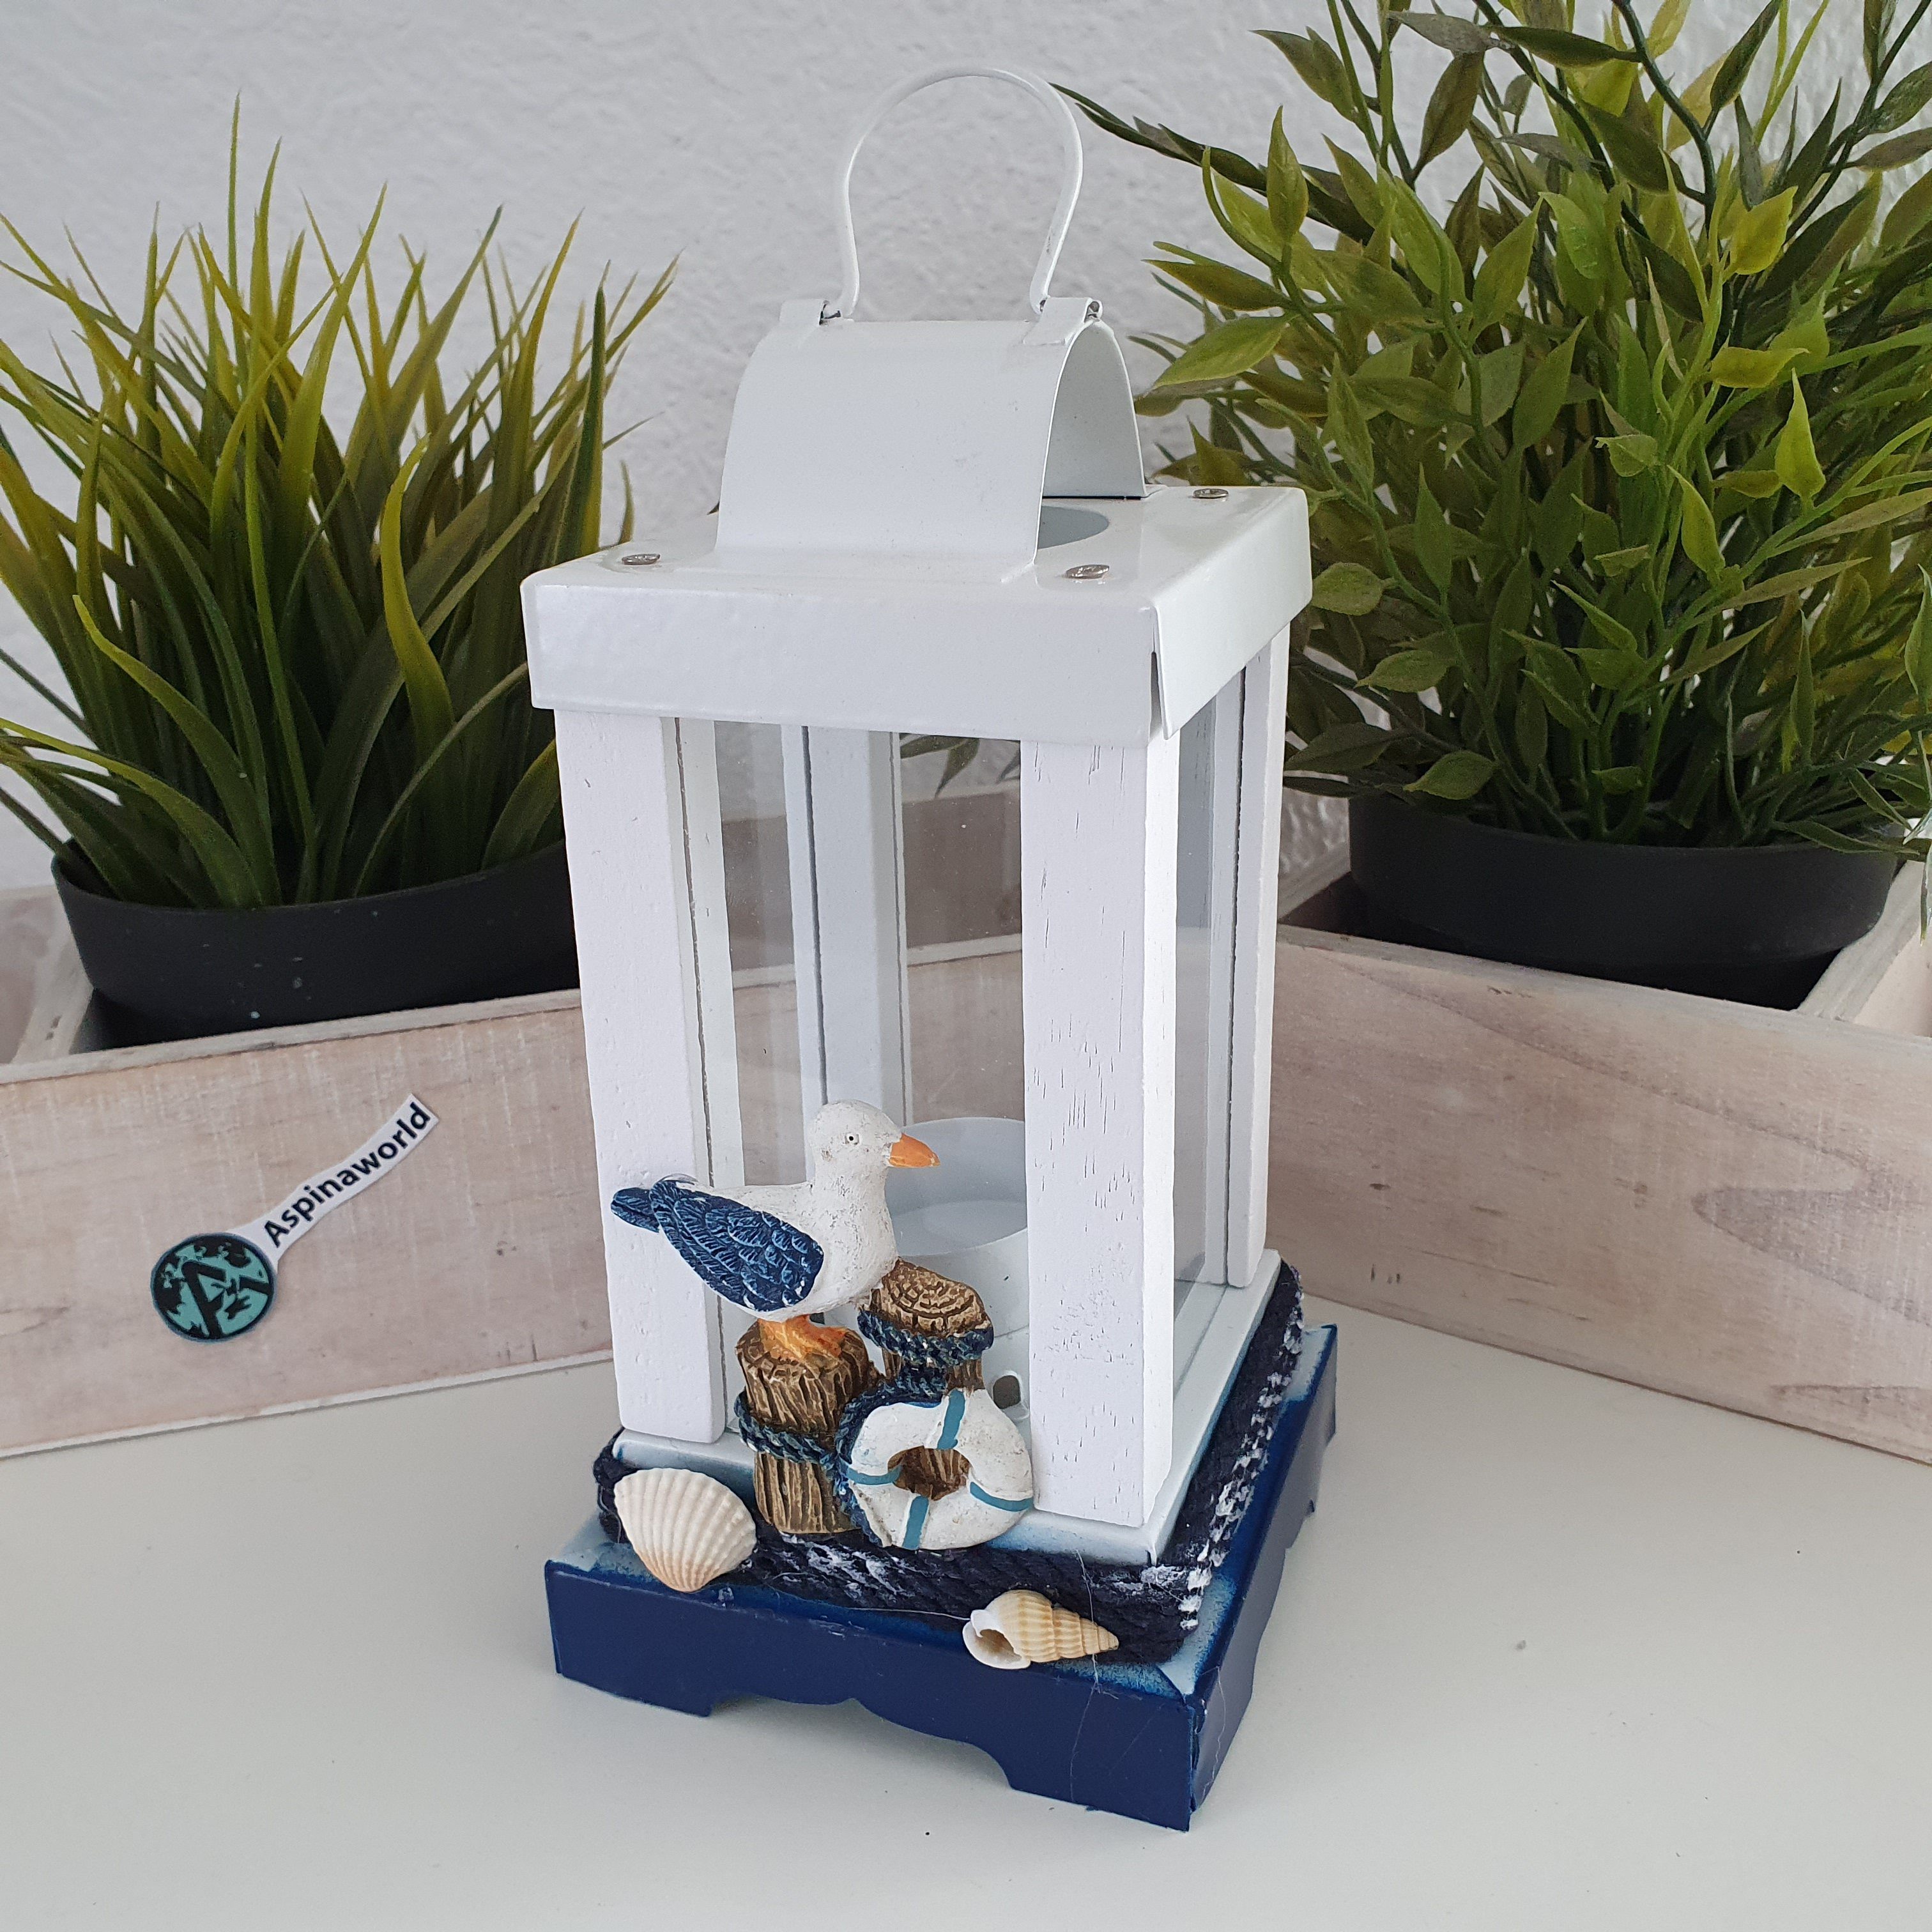 Aspinaworld Teelichthalter Maritime Deko Laternen Teelichthalter aus Metall mit Möwe 22 cm